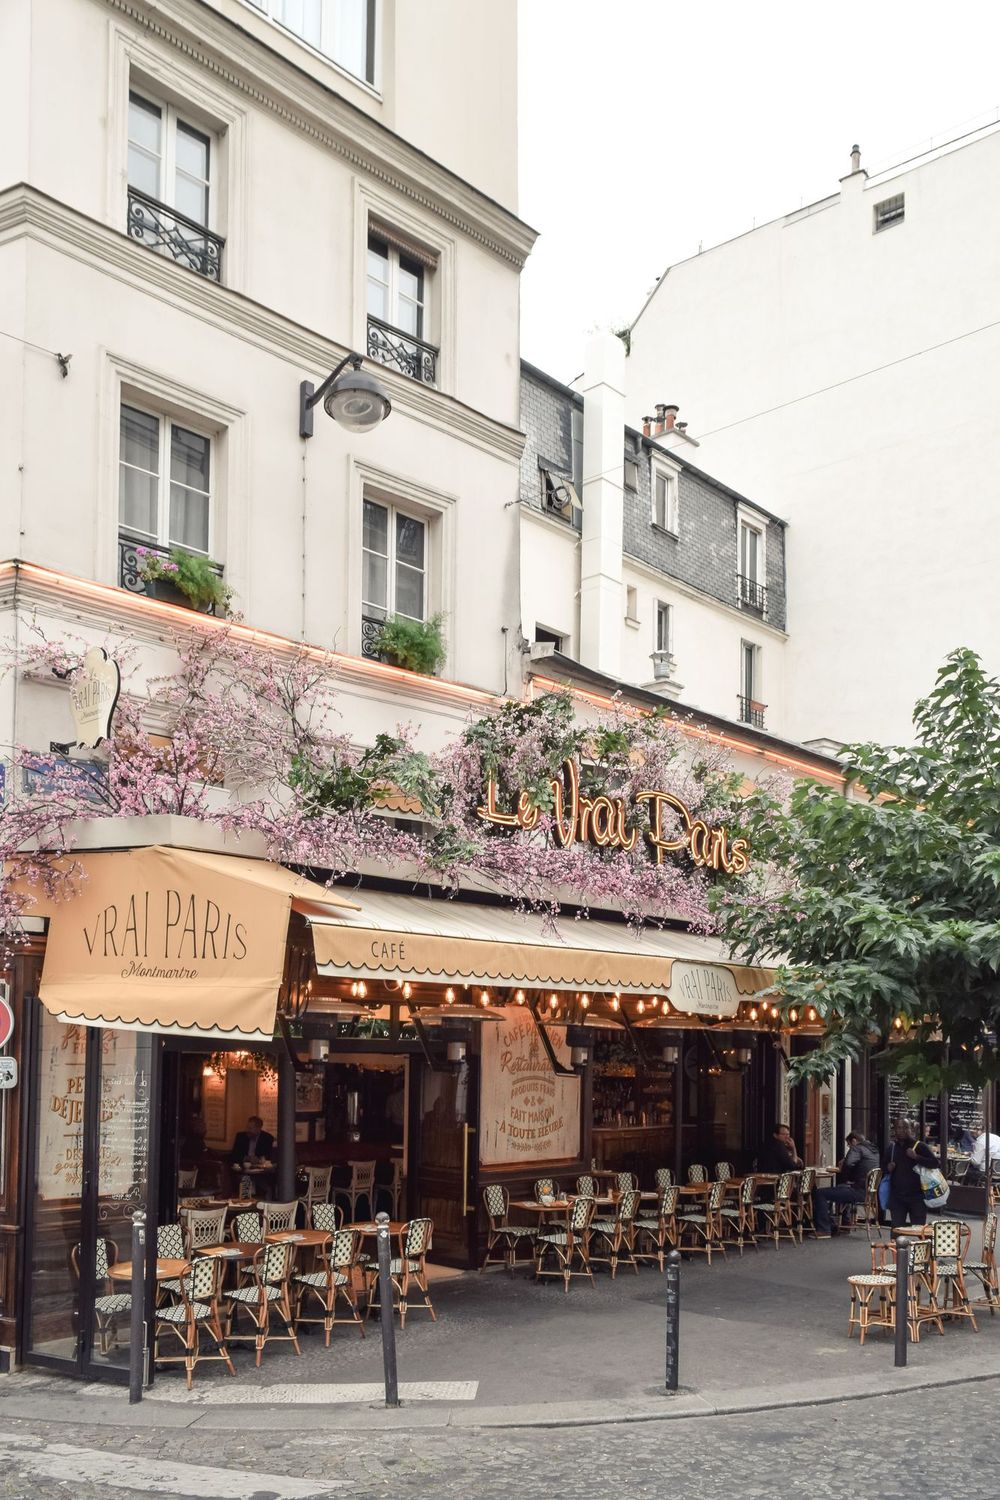 Le Vrai Paris Restaurant